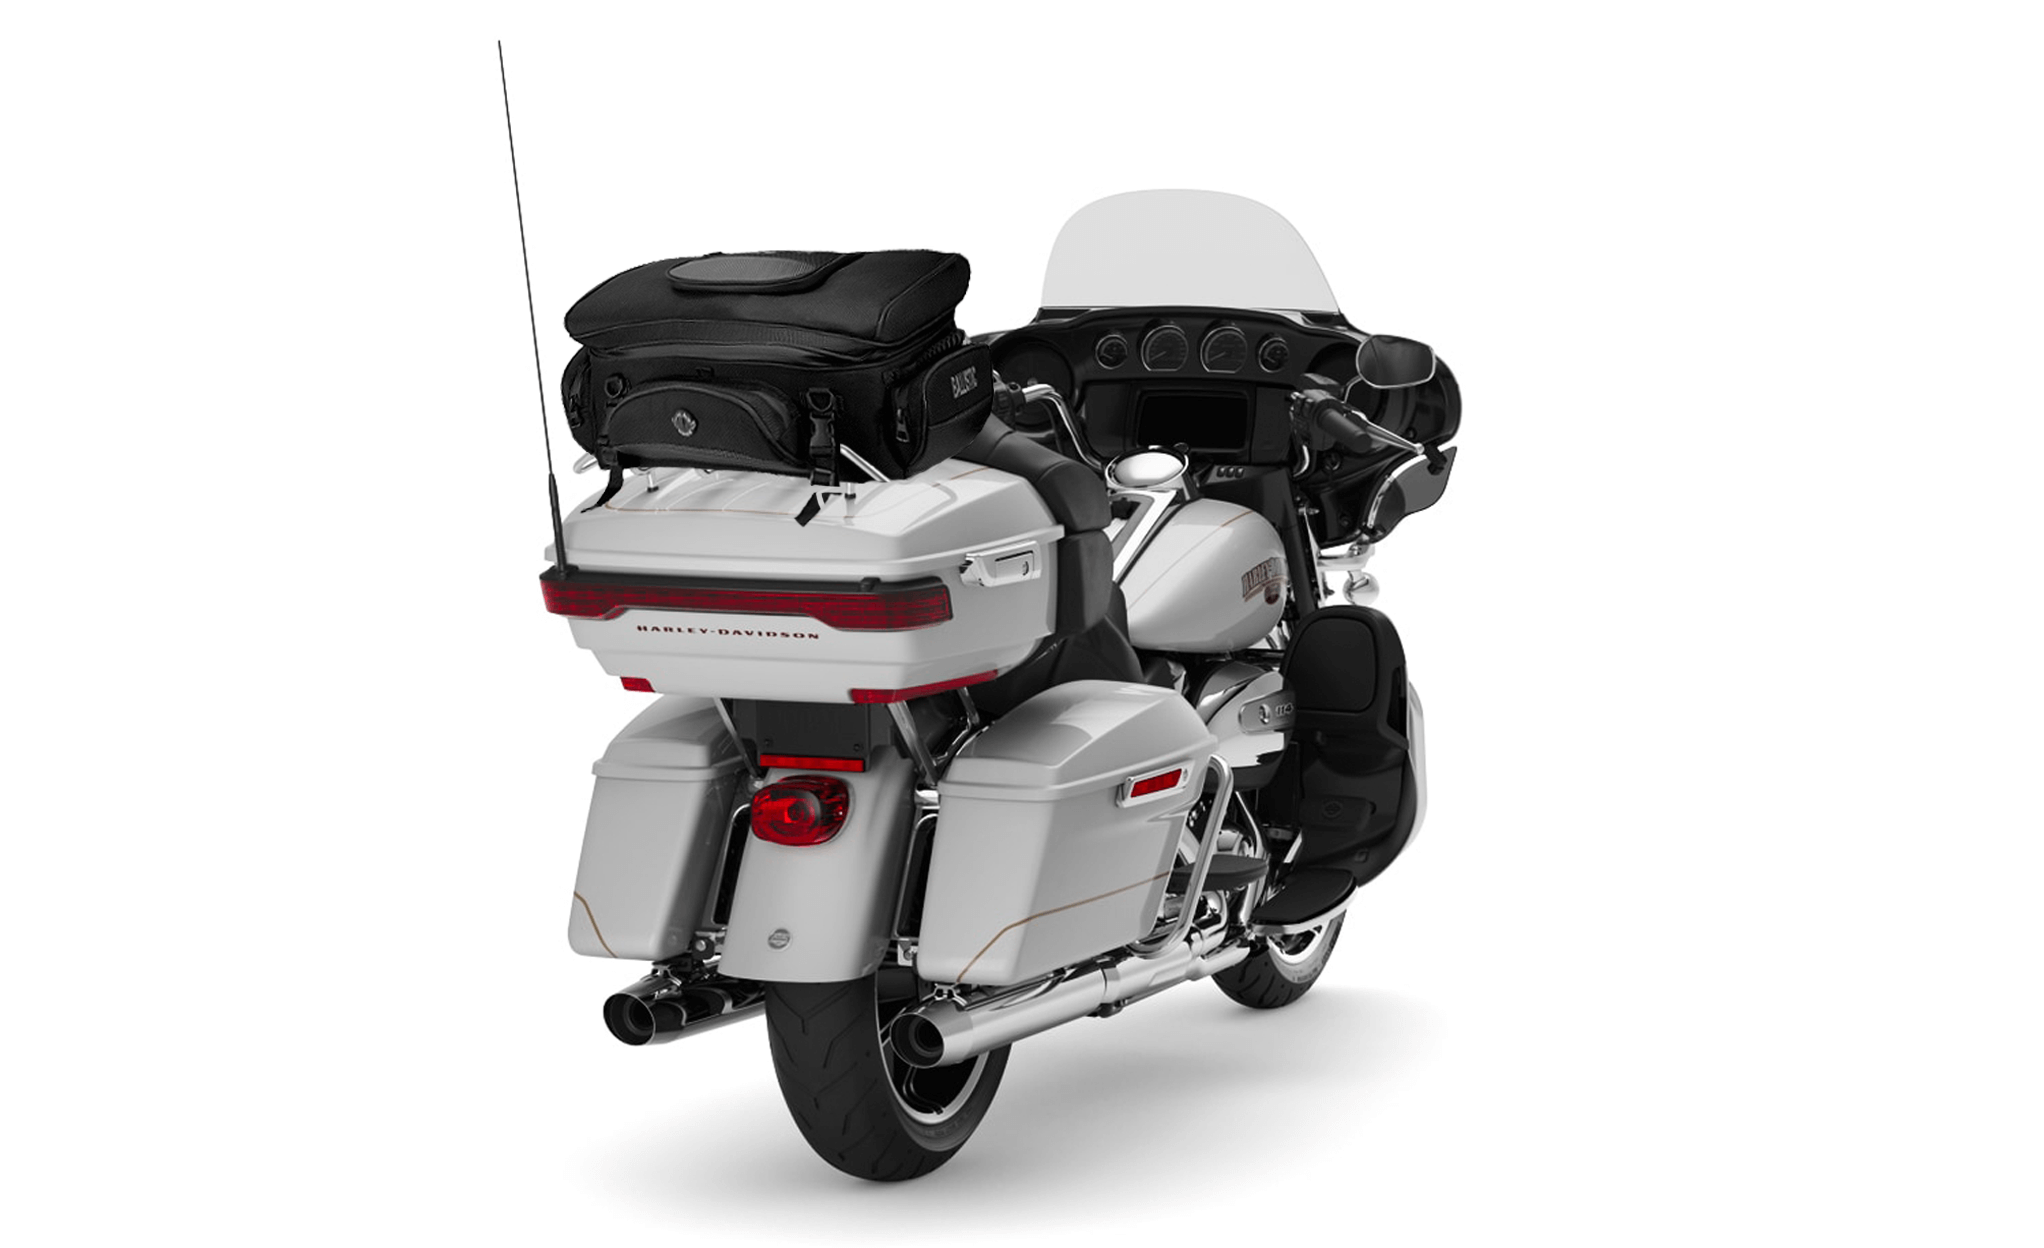 Viking Voyage Elite XL Motorcycle Luggage Rack Bag for Harley Davidson Bag on Bike View @expand